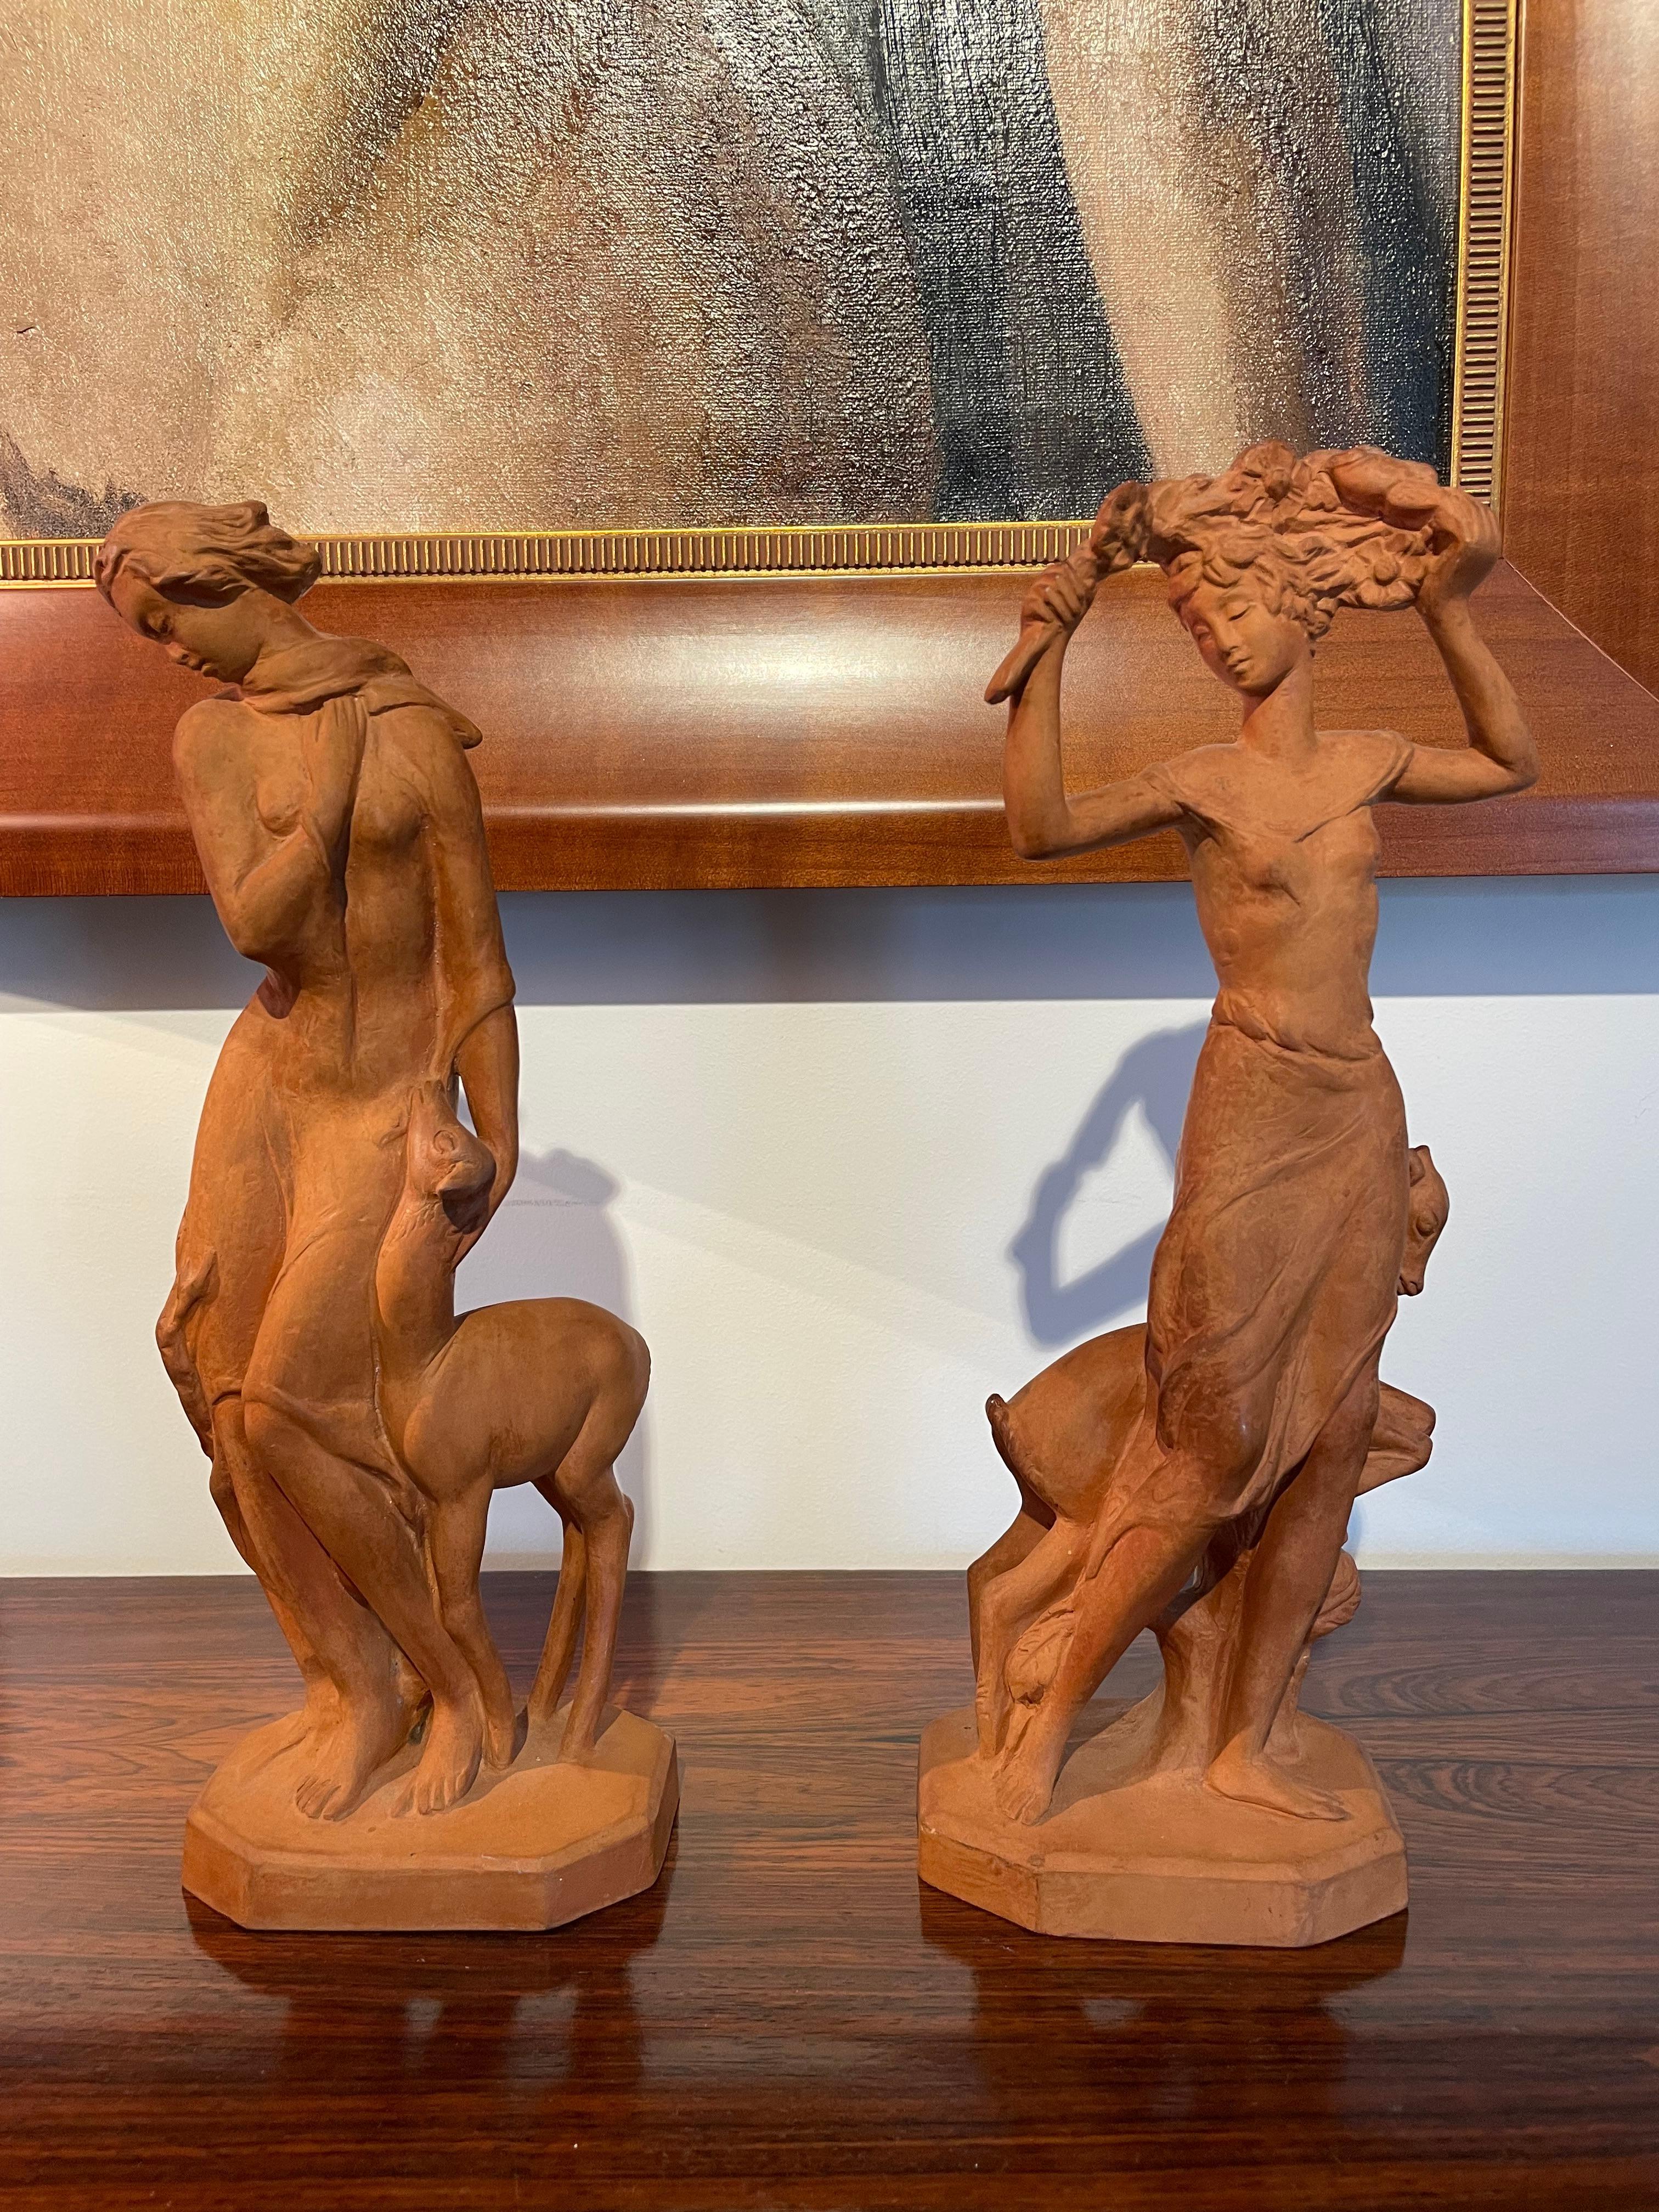 Cet ensemble élégant et chic de deux figurines italiennes en terre cuite date de la période Art déco des années 1920 et 1930. L'une des figures représente l'hiver et l'autre le printemps ou l'été.

Note : 
Les dimensions de la figurine d'hiver sont